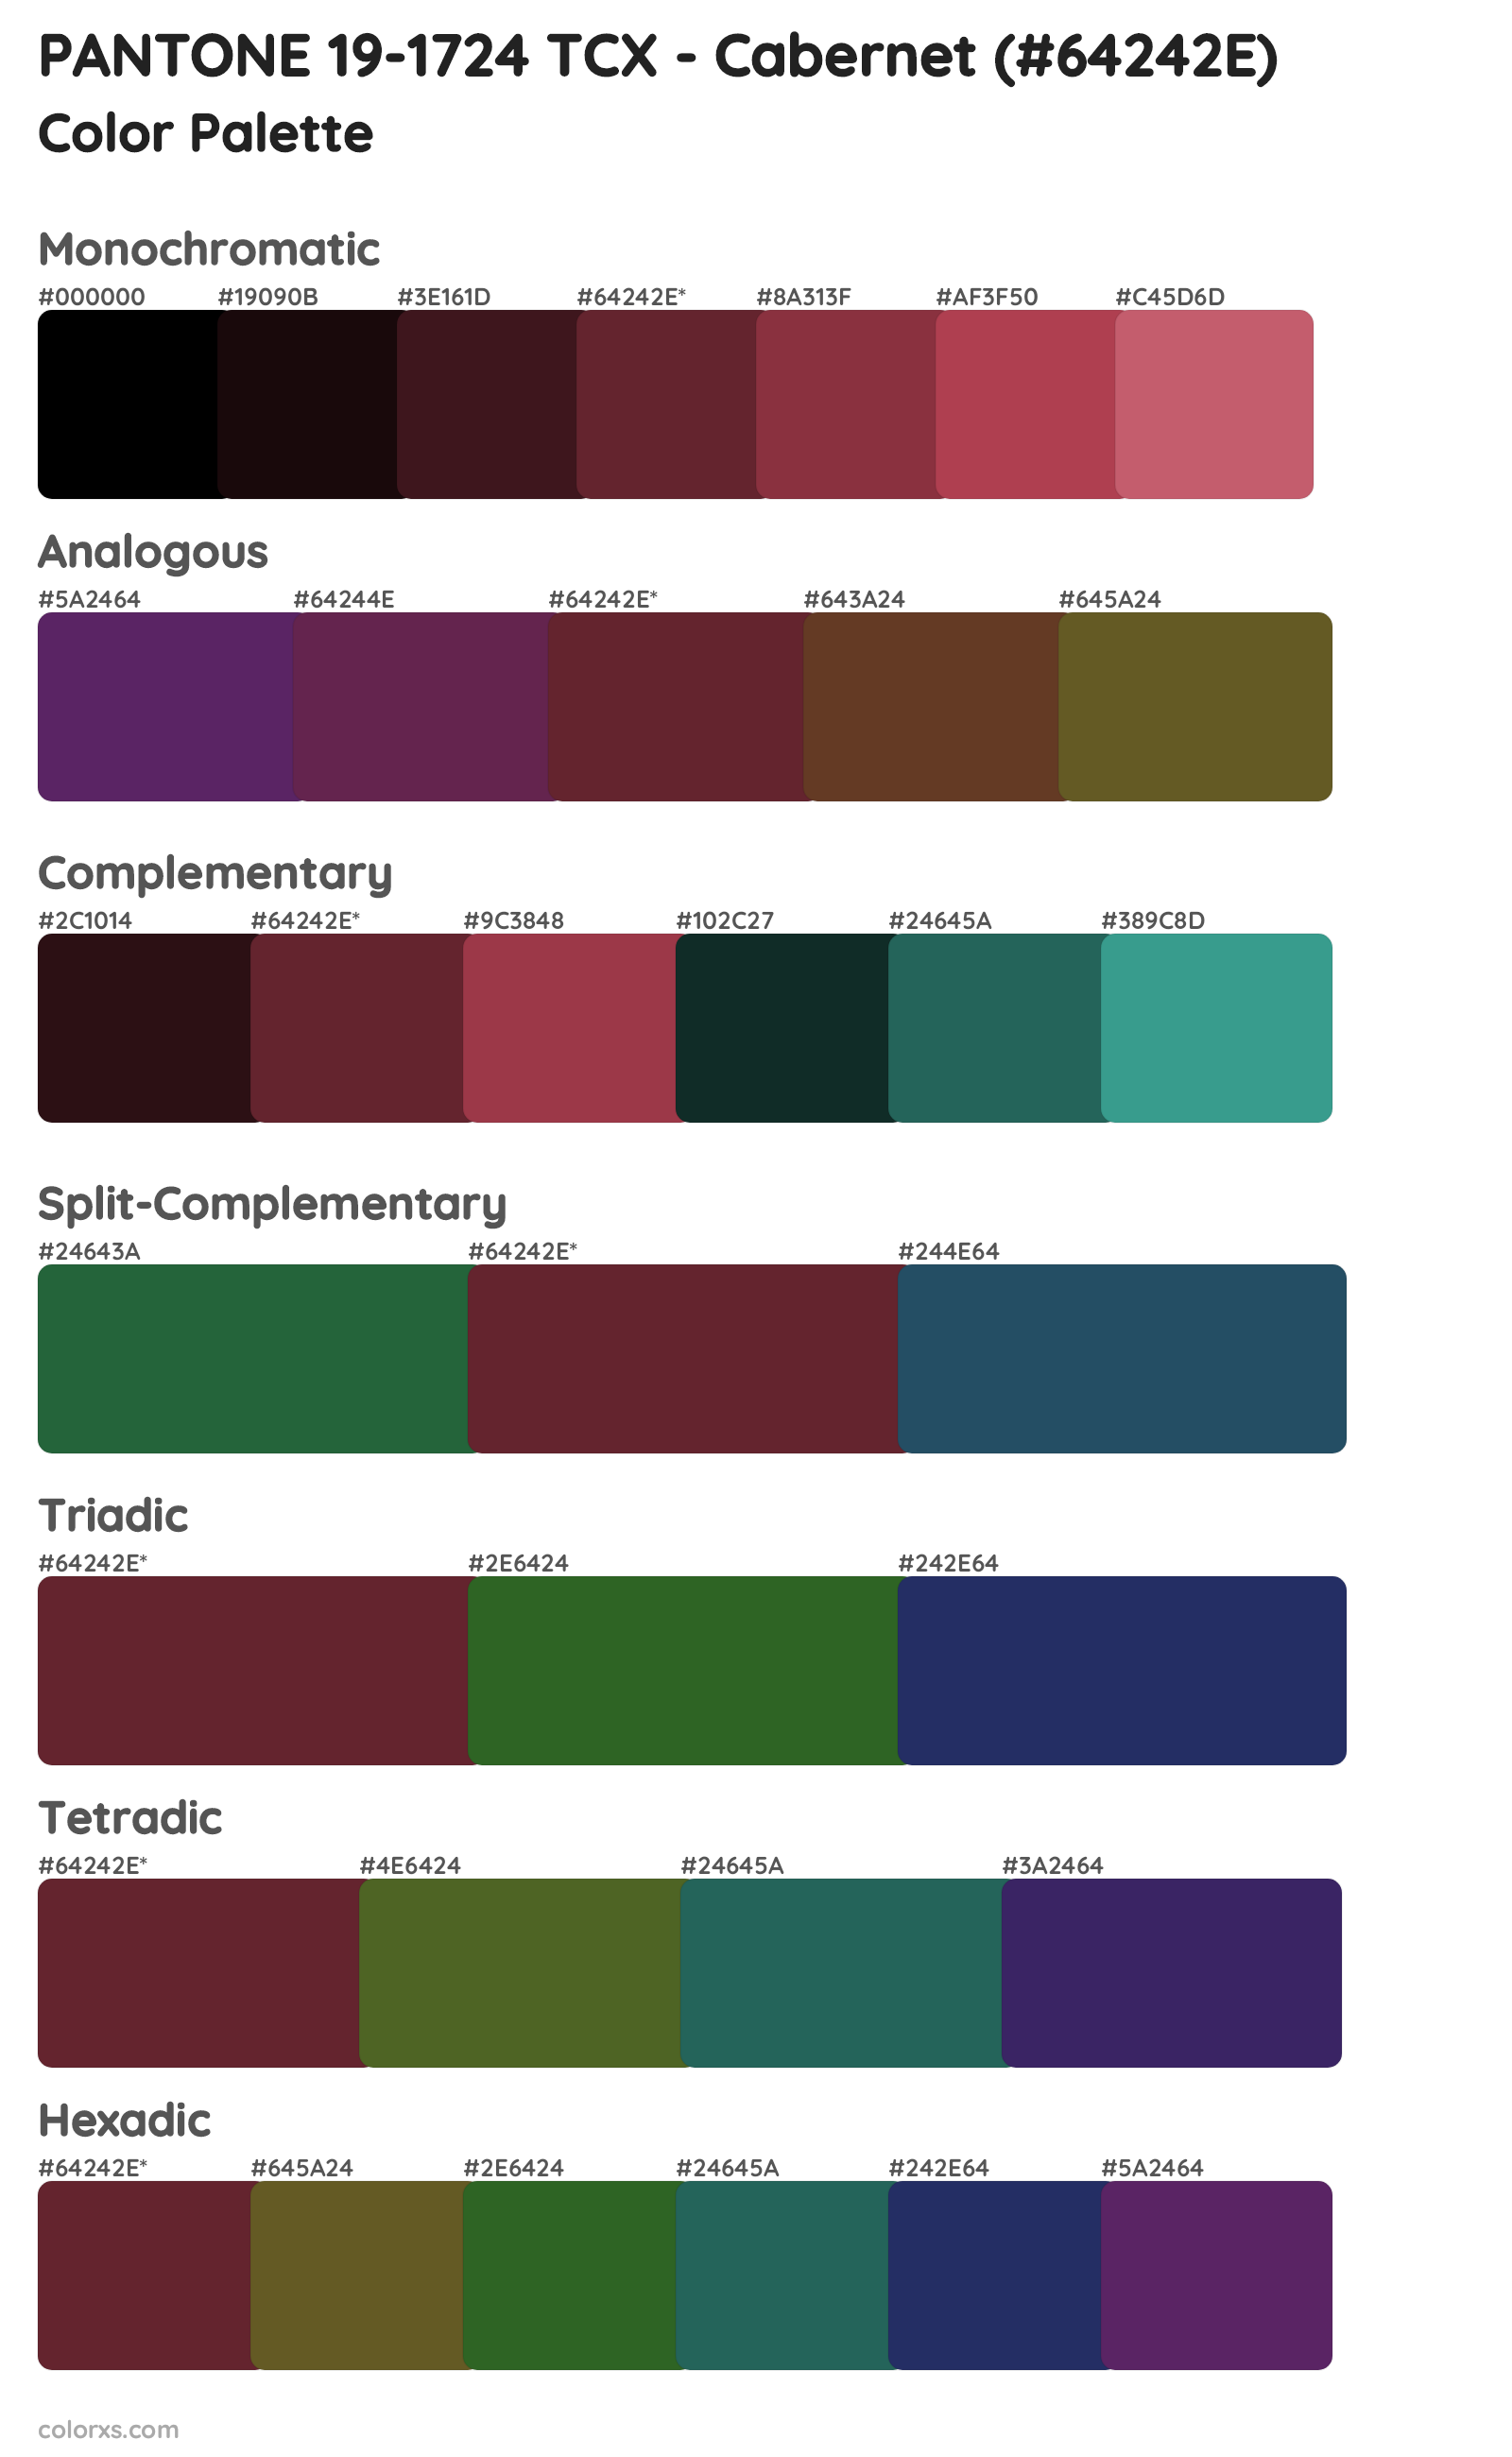 PANTONE 19-1724 TCX - Cabernet Color Scheme Palettes